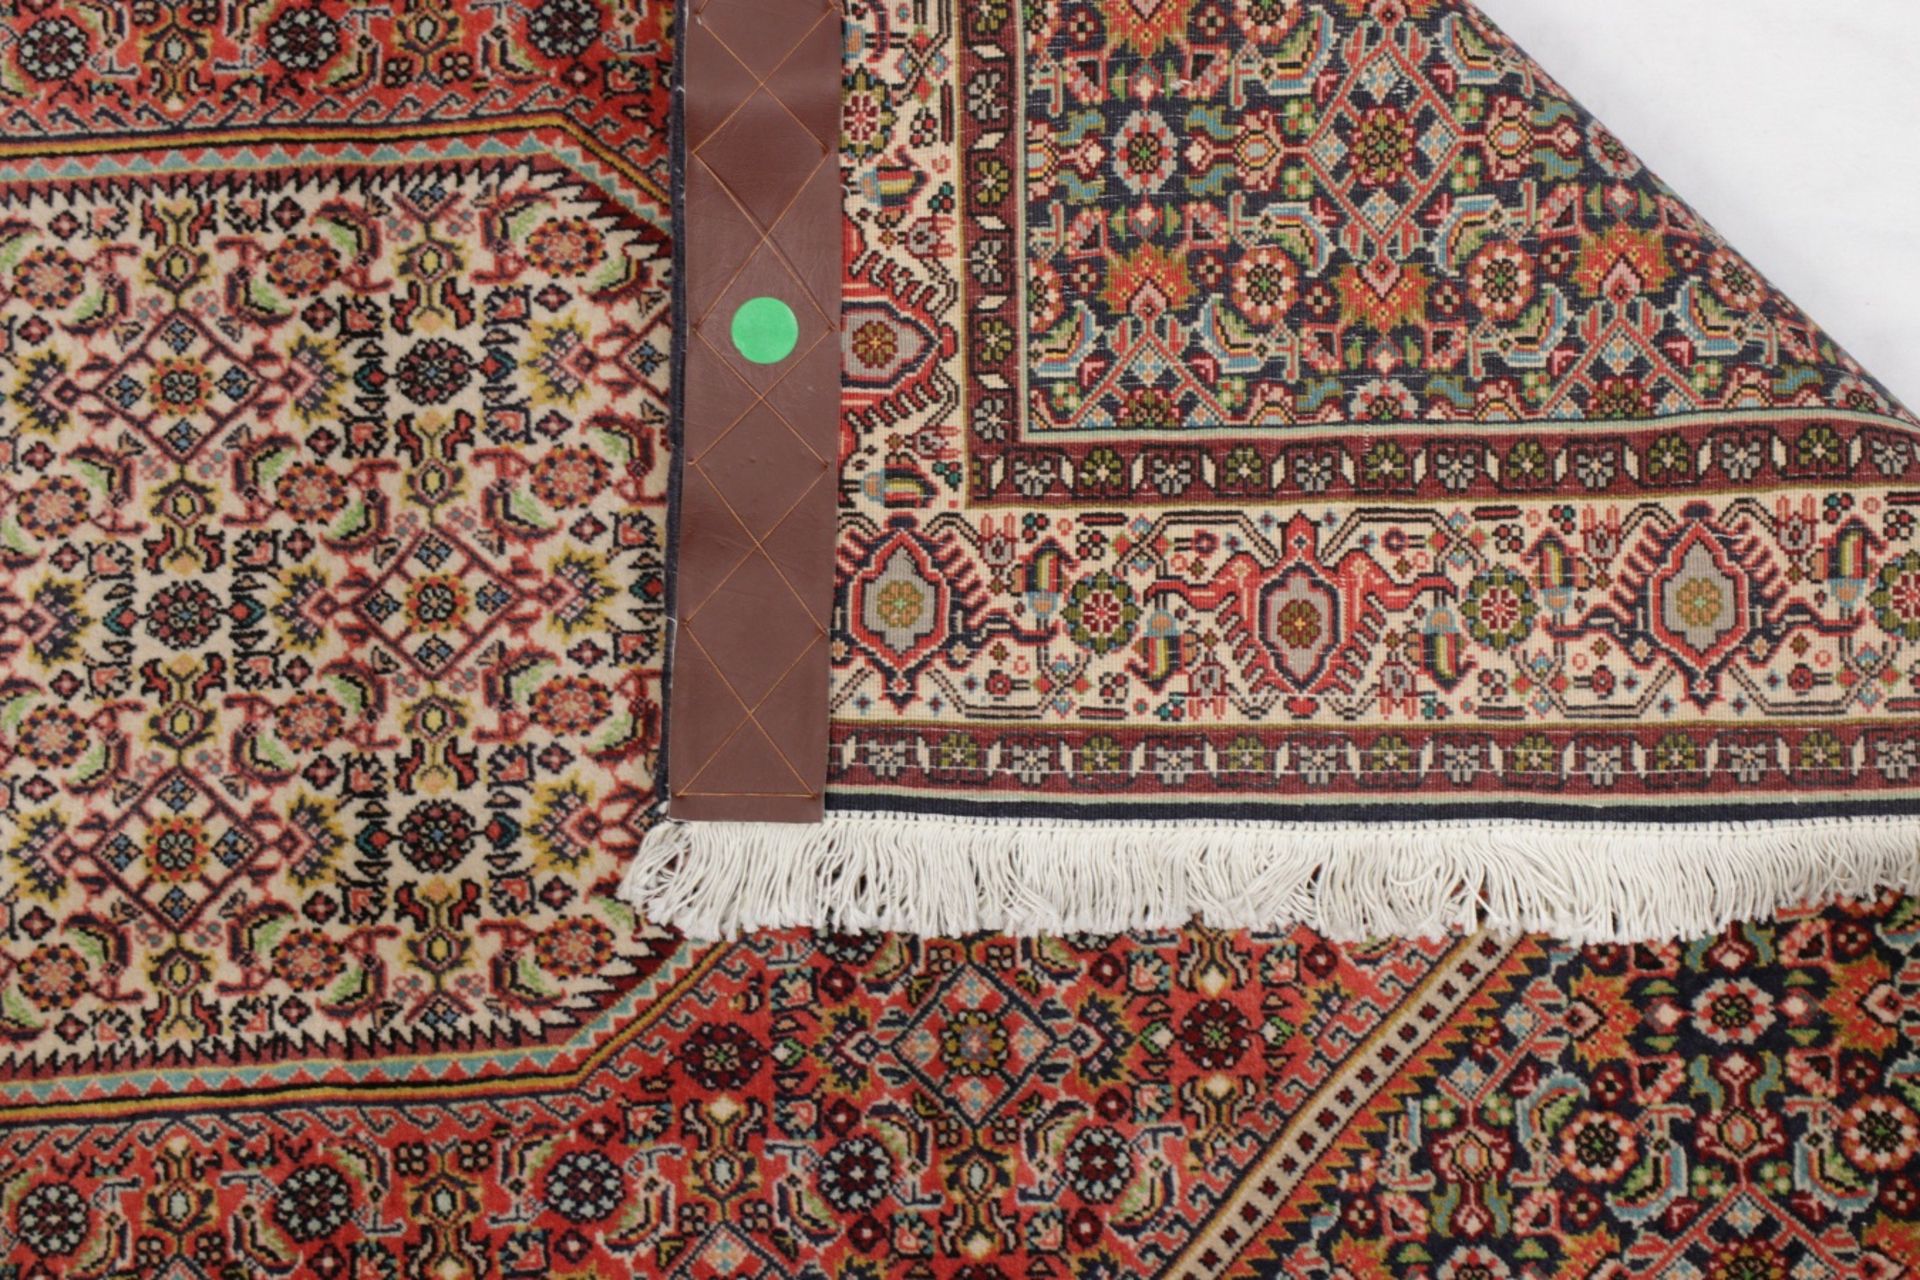 Schöner Orient Teppich 1,65 x 1,15m - Bild 2 aus 4